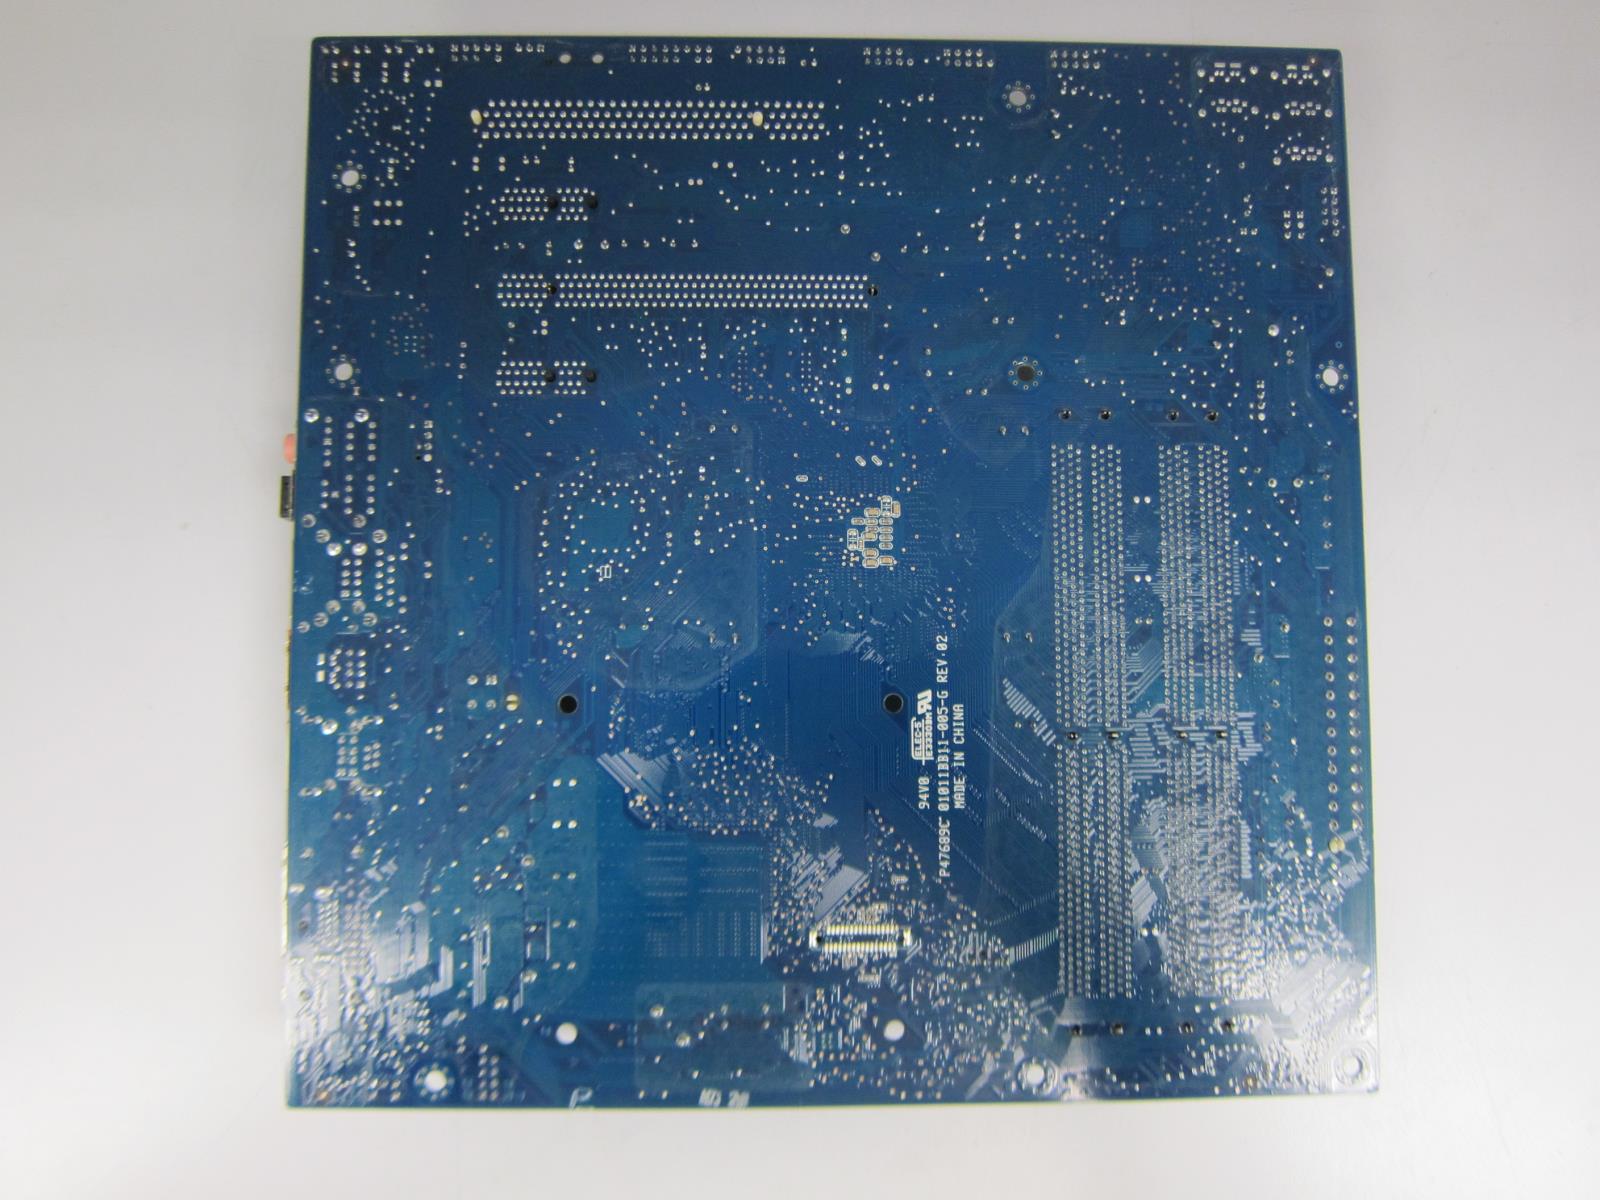 Intel DG45ID Motherboard No CPU | eBay